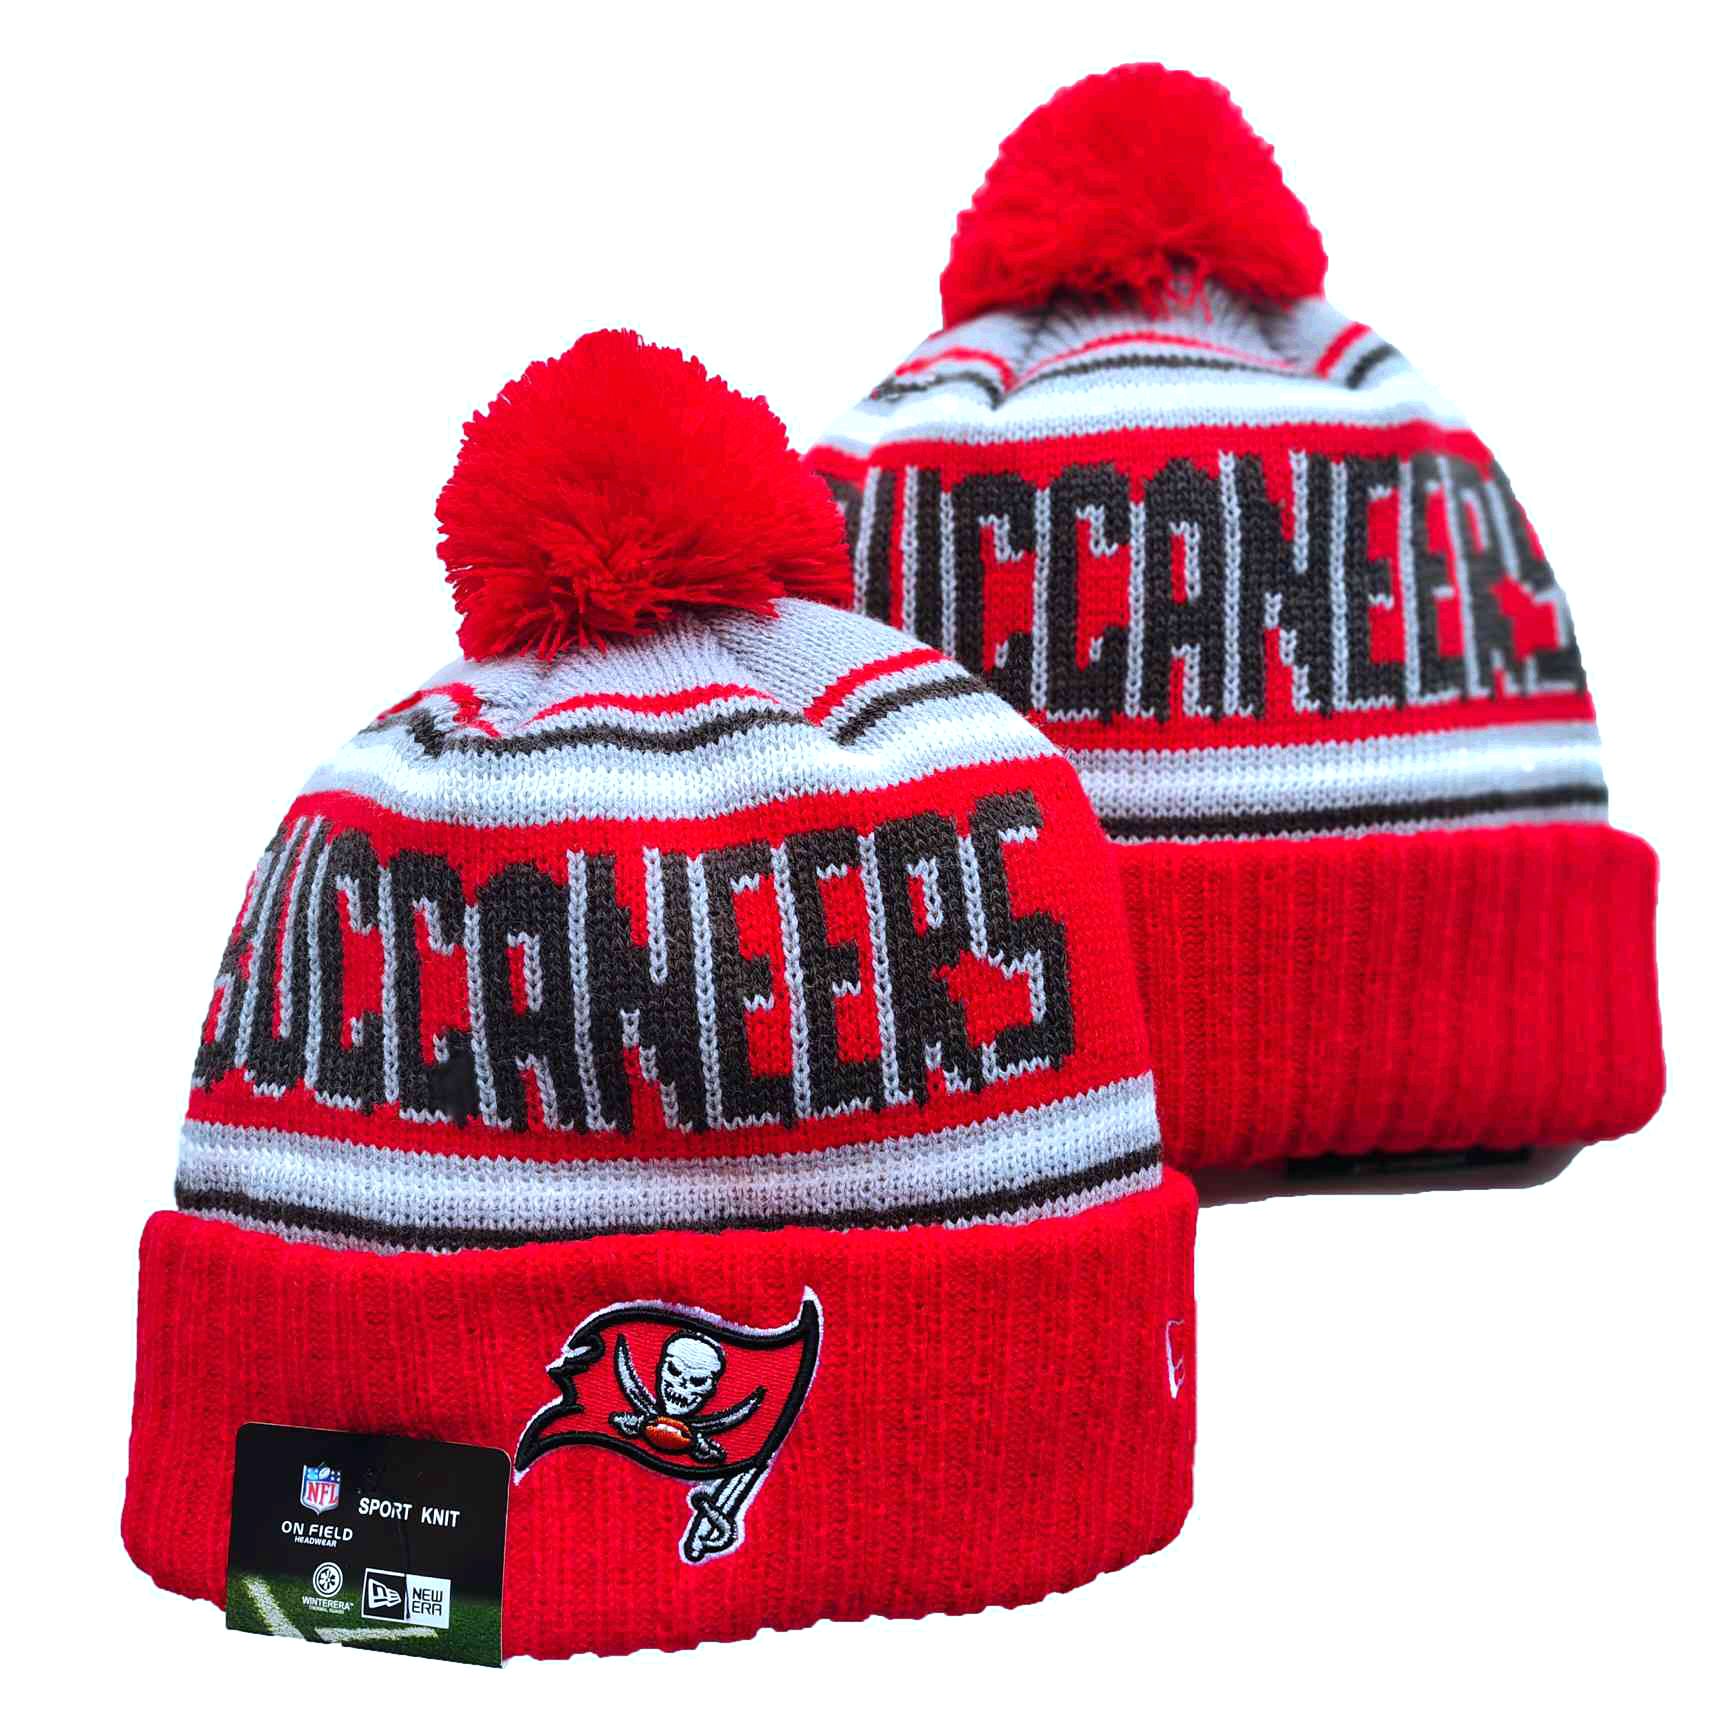 Buccaneers Team Logo Red Pom Cuffed Knit Hat YD